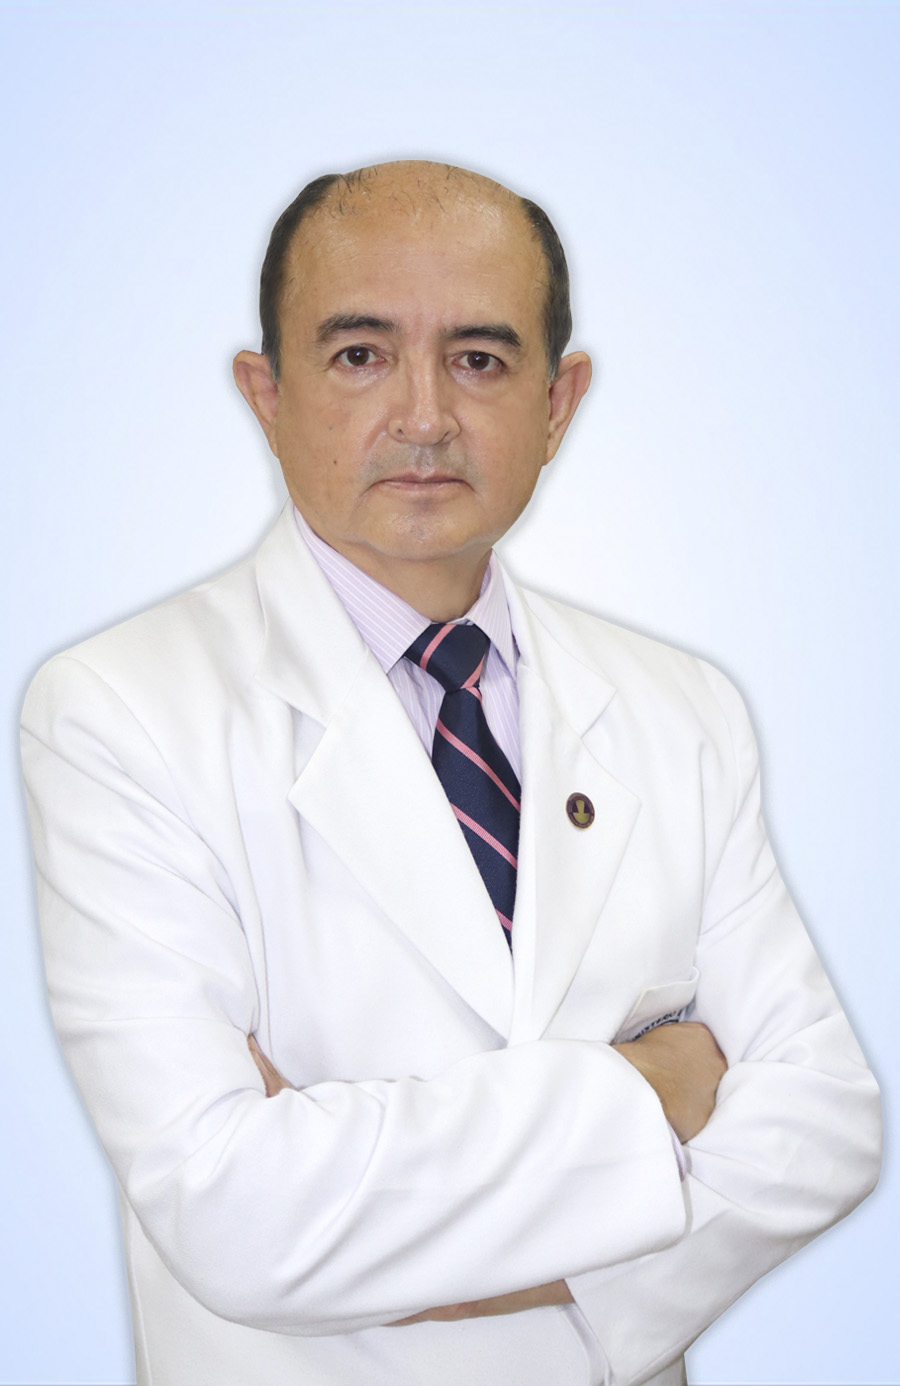 DR. ZAMORA